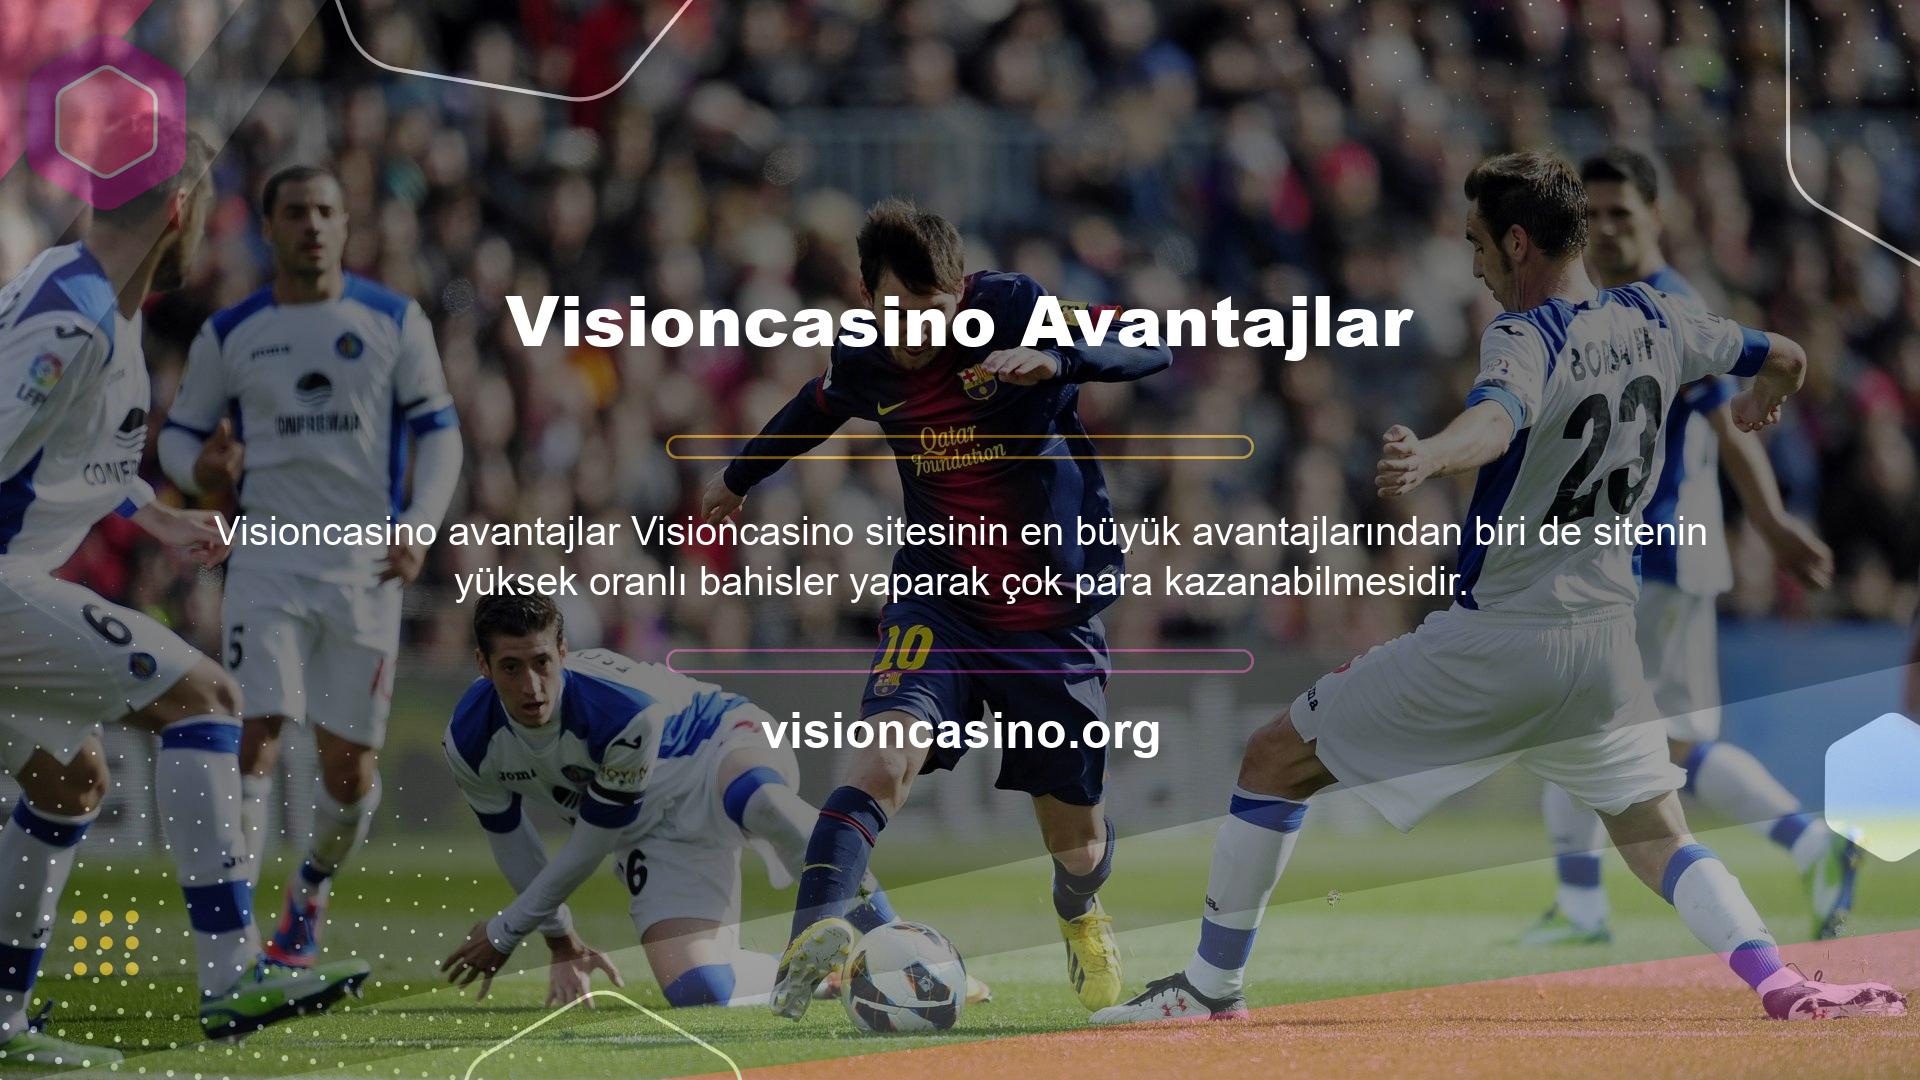 Bu özellik Türk bahisçiler için çok önemli olduğundan, Visioncasino web sitesi Türk bahisçilerden oluşan geniş bir izleyici kitlesine sahiptir